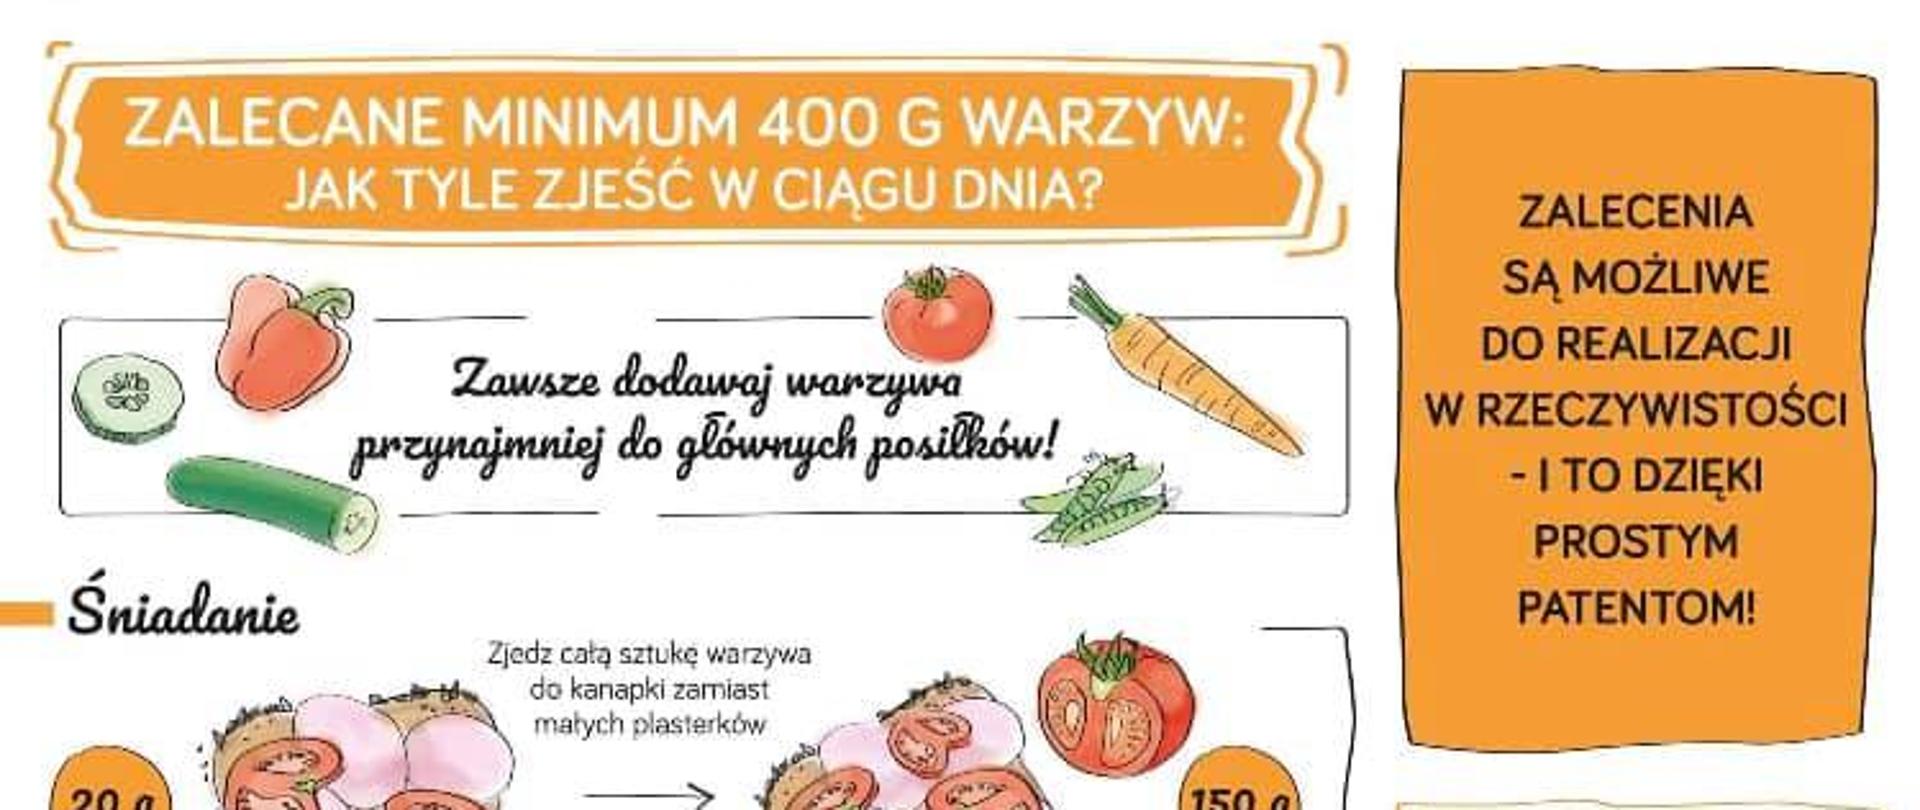 Zalecane minimum 400g warzyw